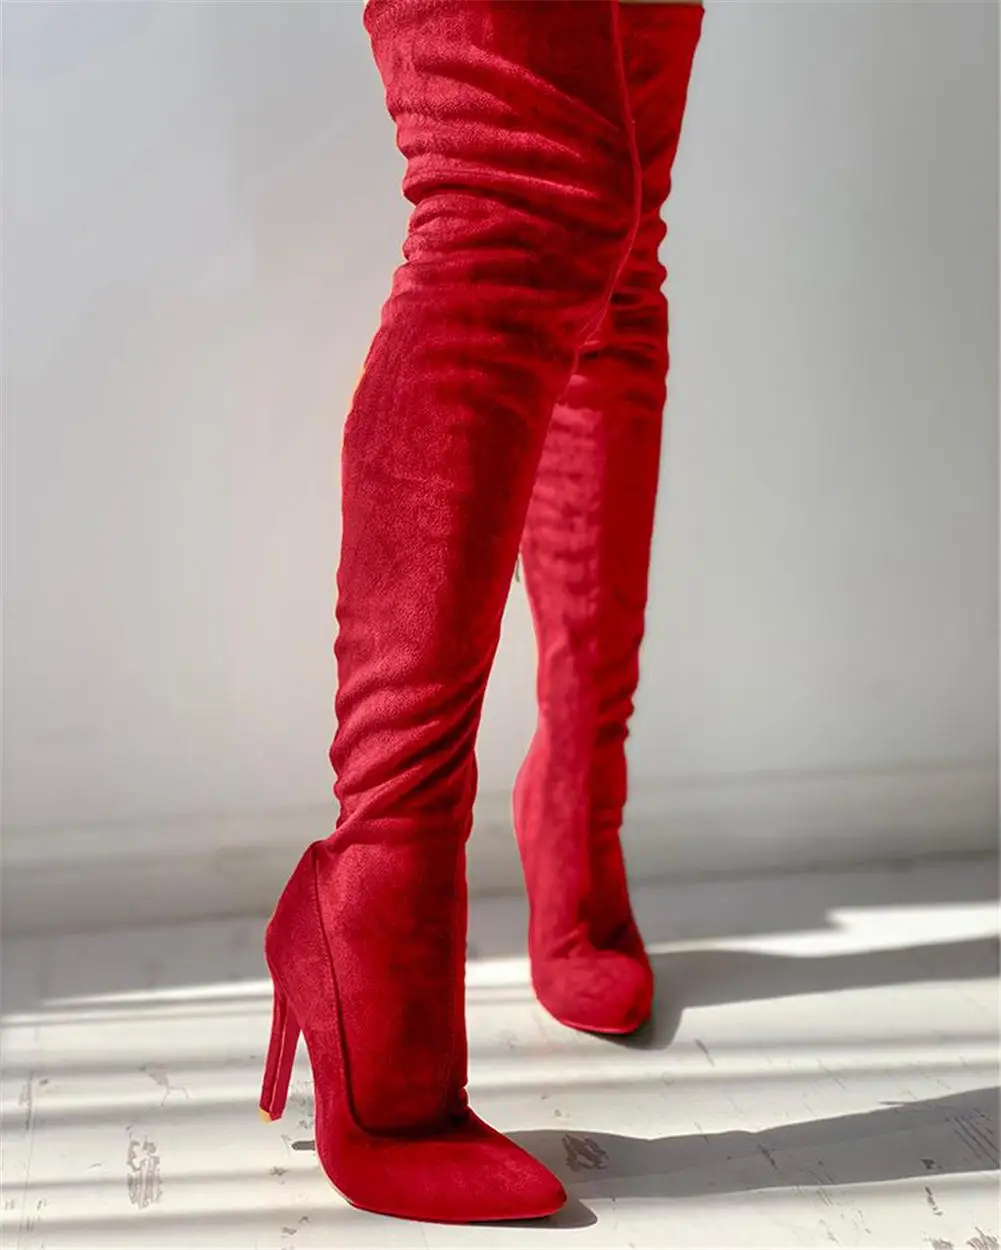 SARAIRIS/; Прямая поставка; женская обувь; большие размеры 48; Сапоги выше колена; пикантные вечерние высокие сапоги на высоком каблуке; botas de mujer - Цвет: Red short plush